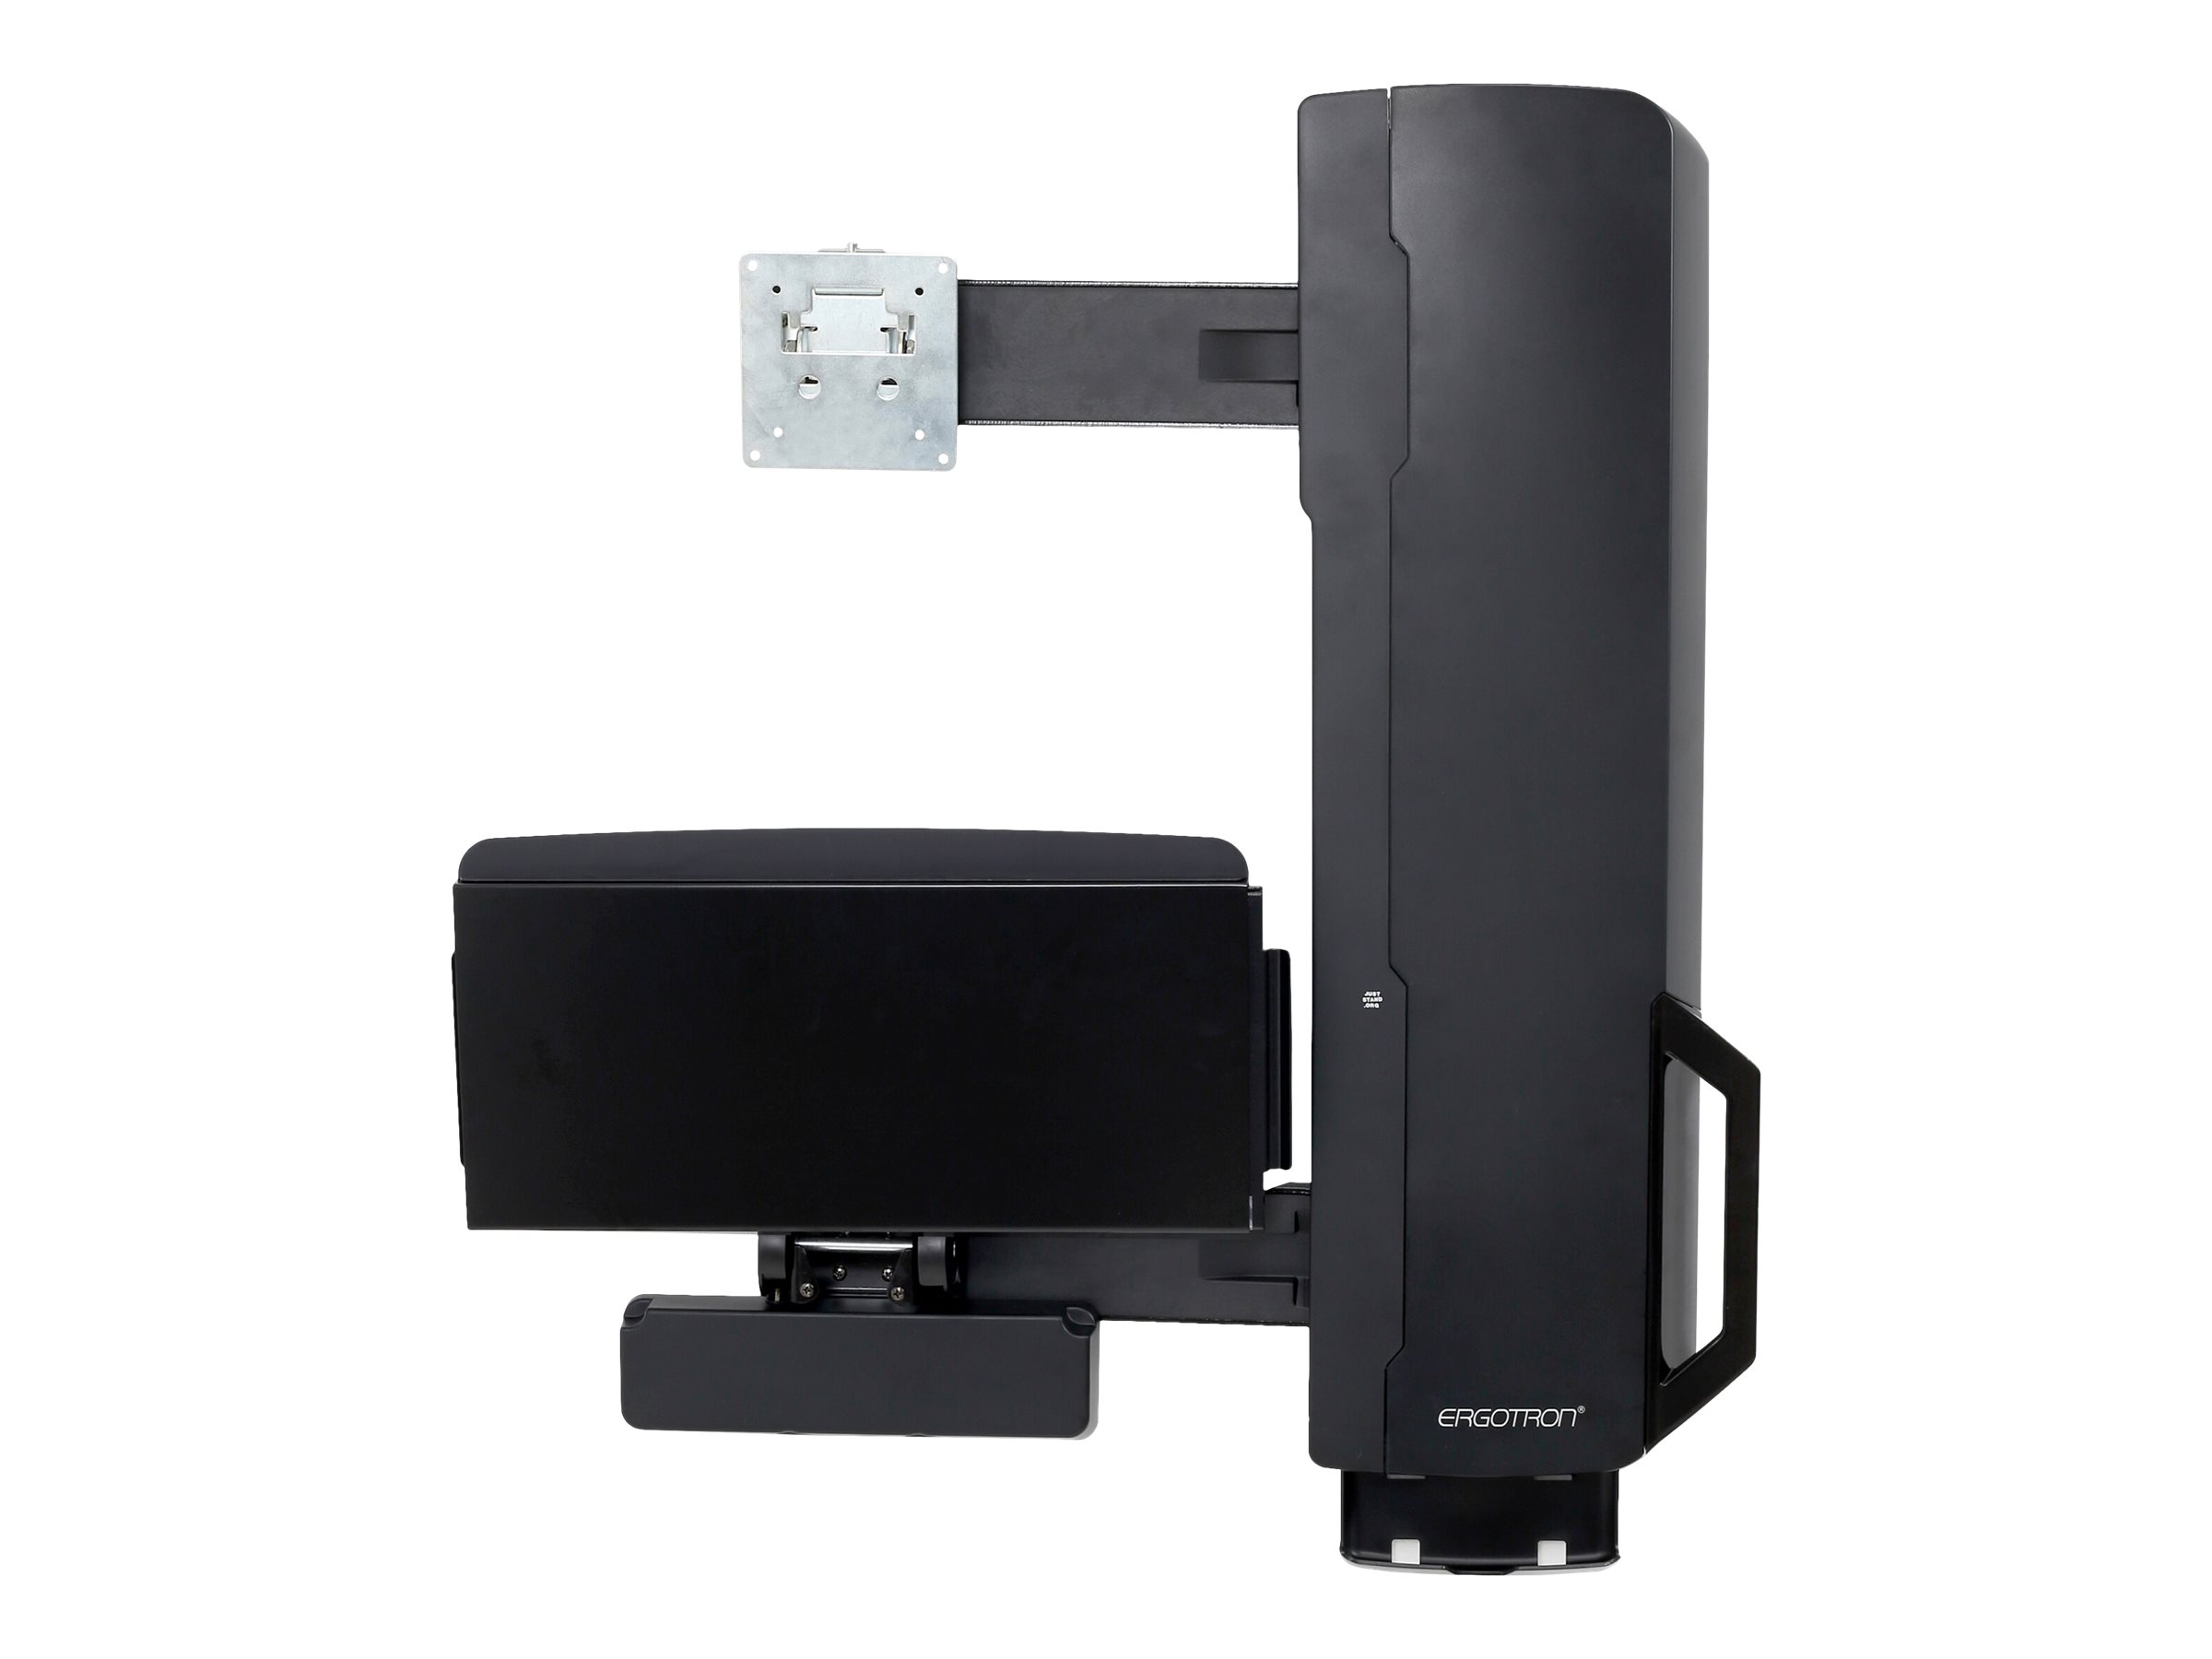 Ergotron Sit-Stand Vertical Lift, High Traffic Area - Kit de montage (levage vertical) - pour écran LCD/équipement PC - système assis-debout, zone à fort trafic - noir - Taille d'écran : jusqu'à 24 pouces - montable sur mur - 61-081-085 - Accessoires pour écran